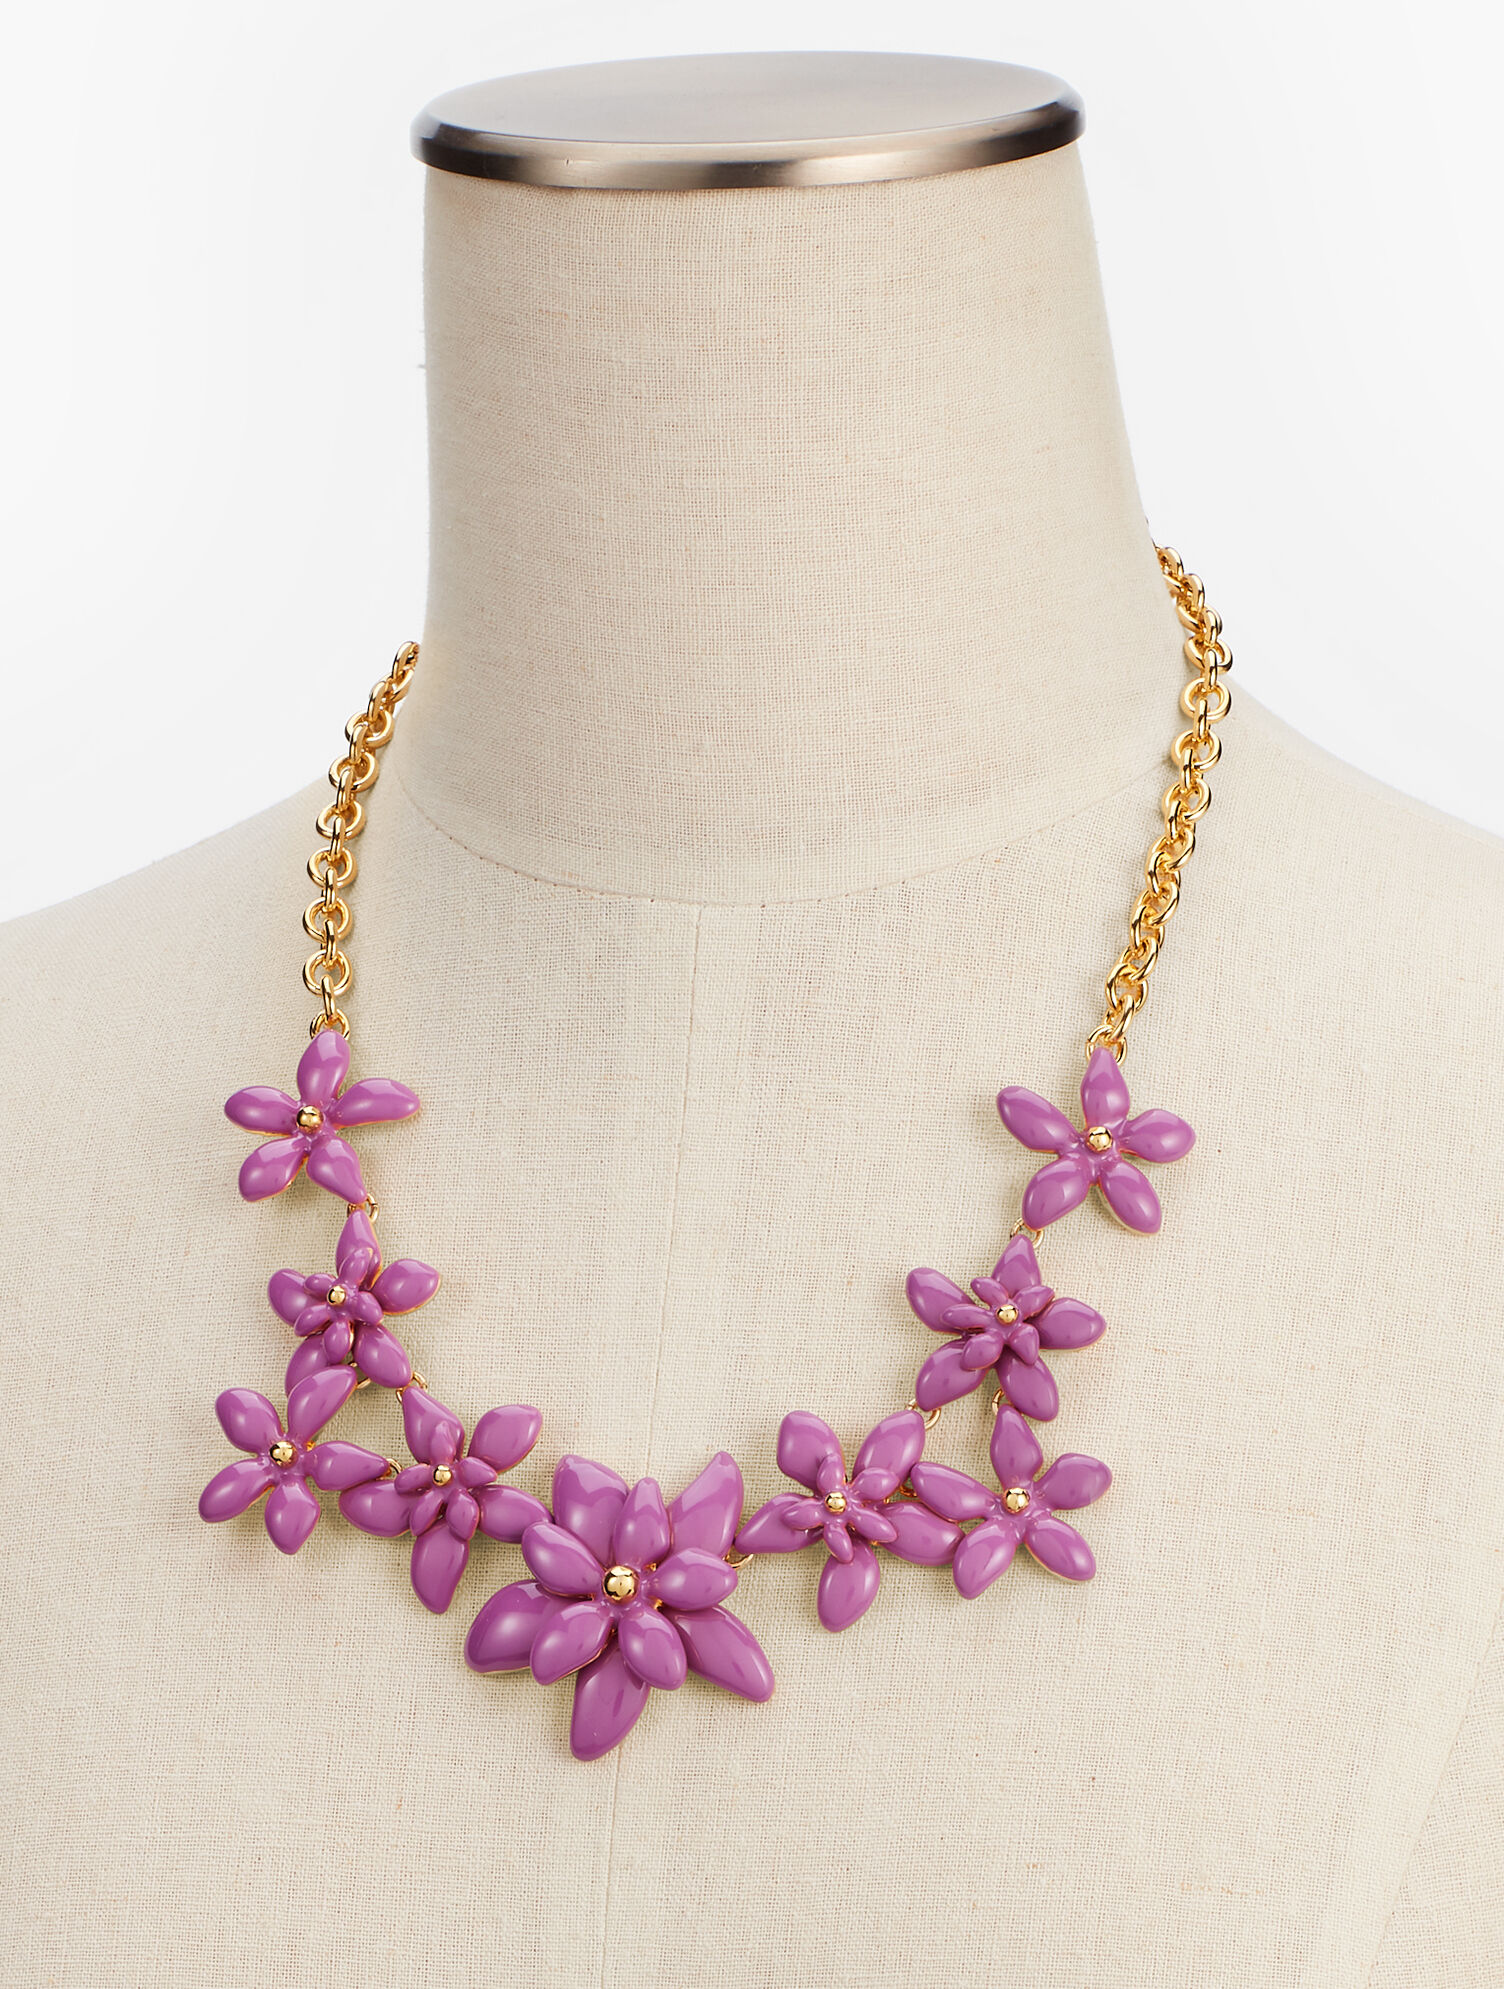 経典 TTT_MSW 22SS Flower necklace | icom-association.com